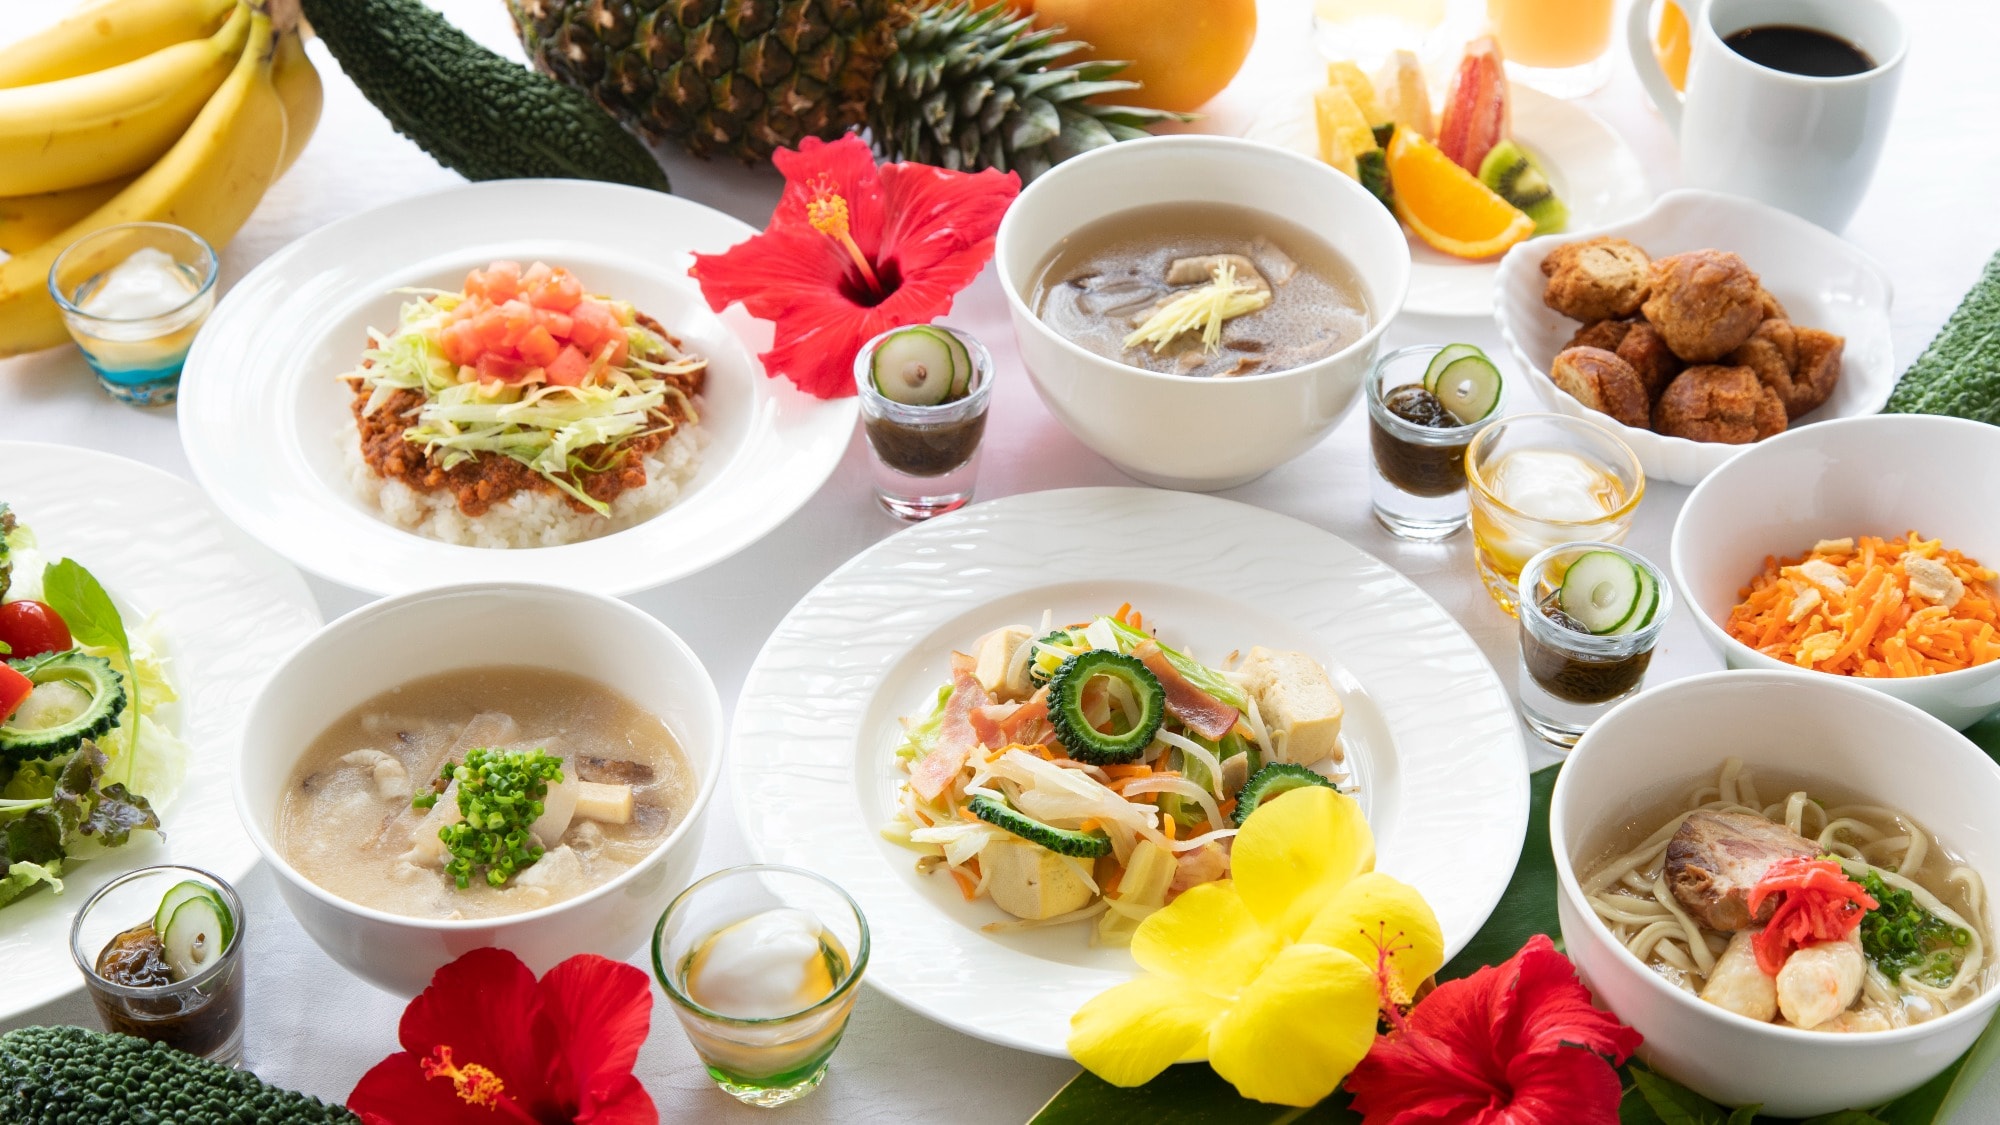 【조식 뷔페】 오키나와 특유의 요리도 풍부! 풍부한 메뉴로 건강한 하루를 스타트!